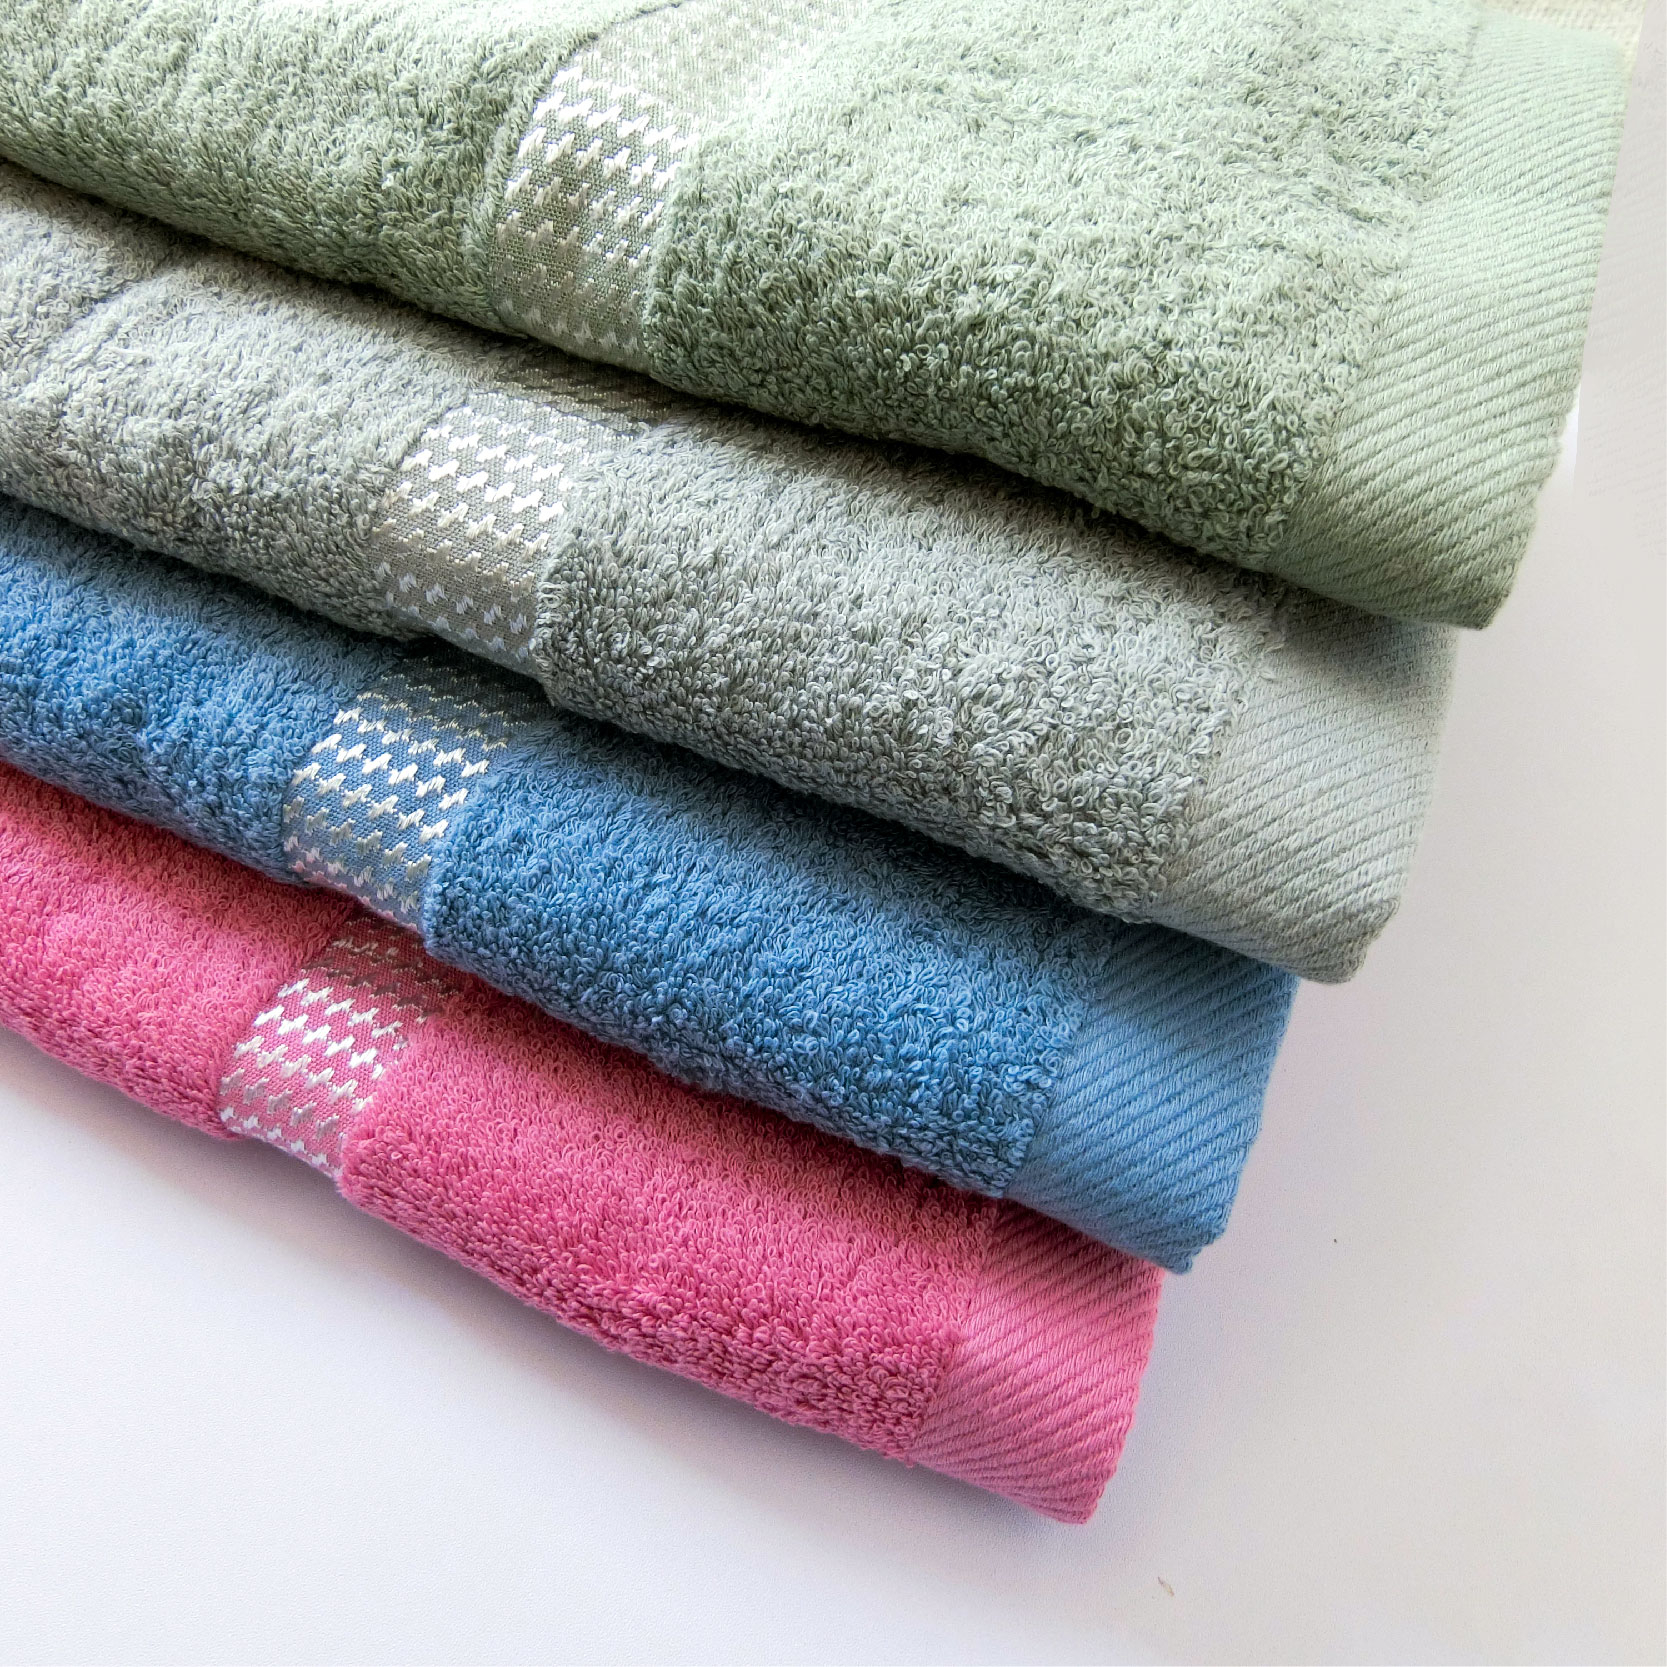 【凱美棉業】MIT台灣製12兩嚴選美國棉浴巾 純色緞邊款